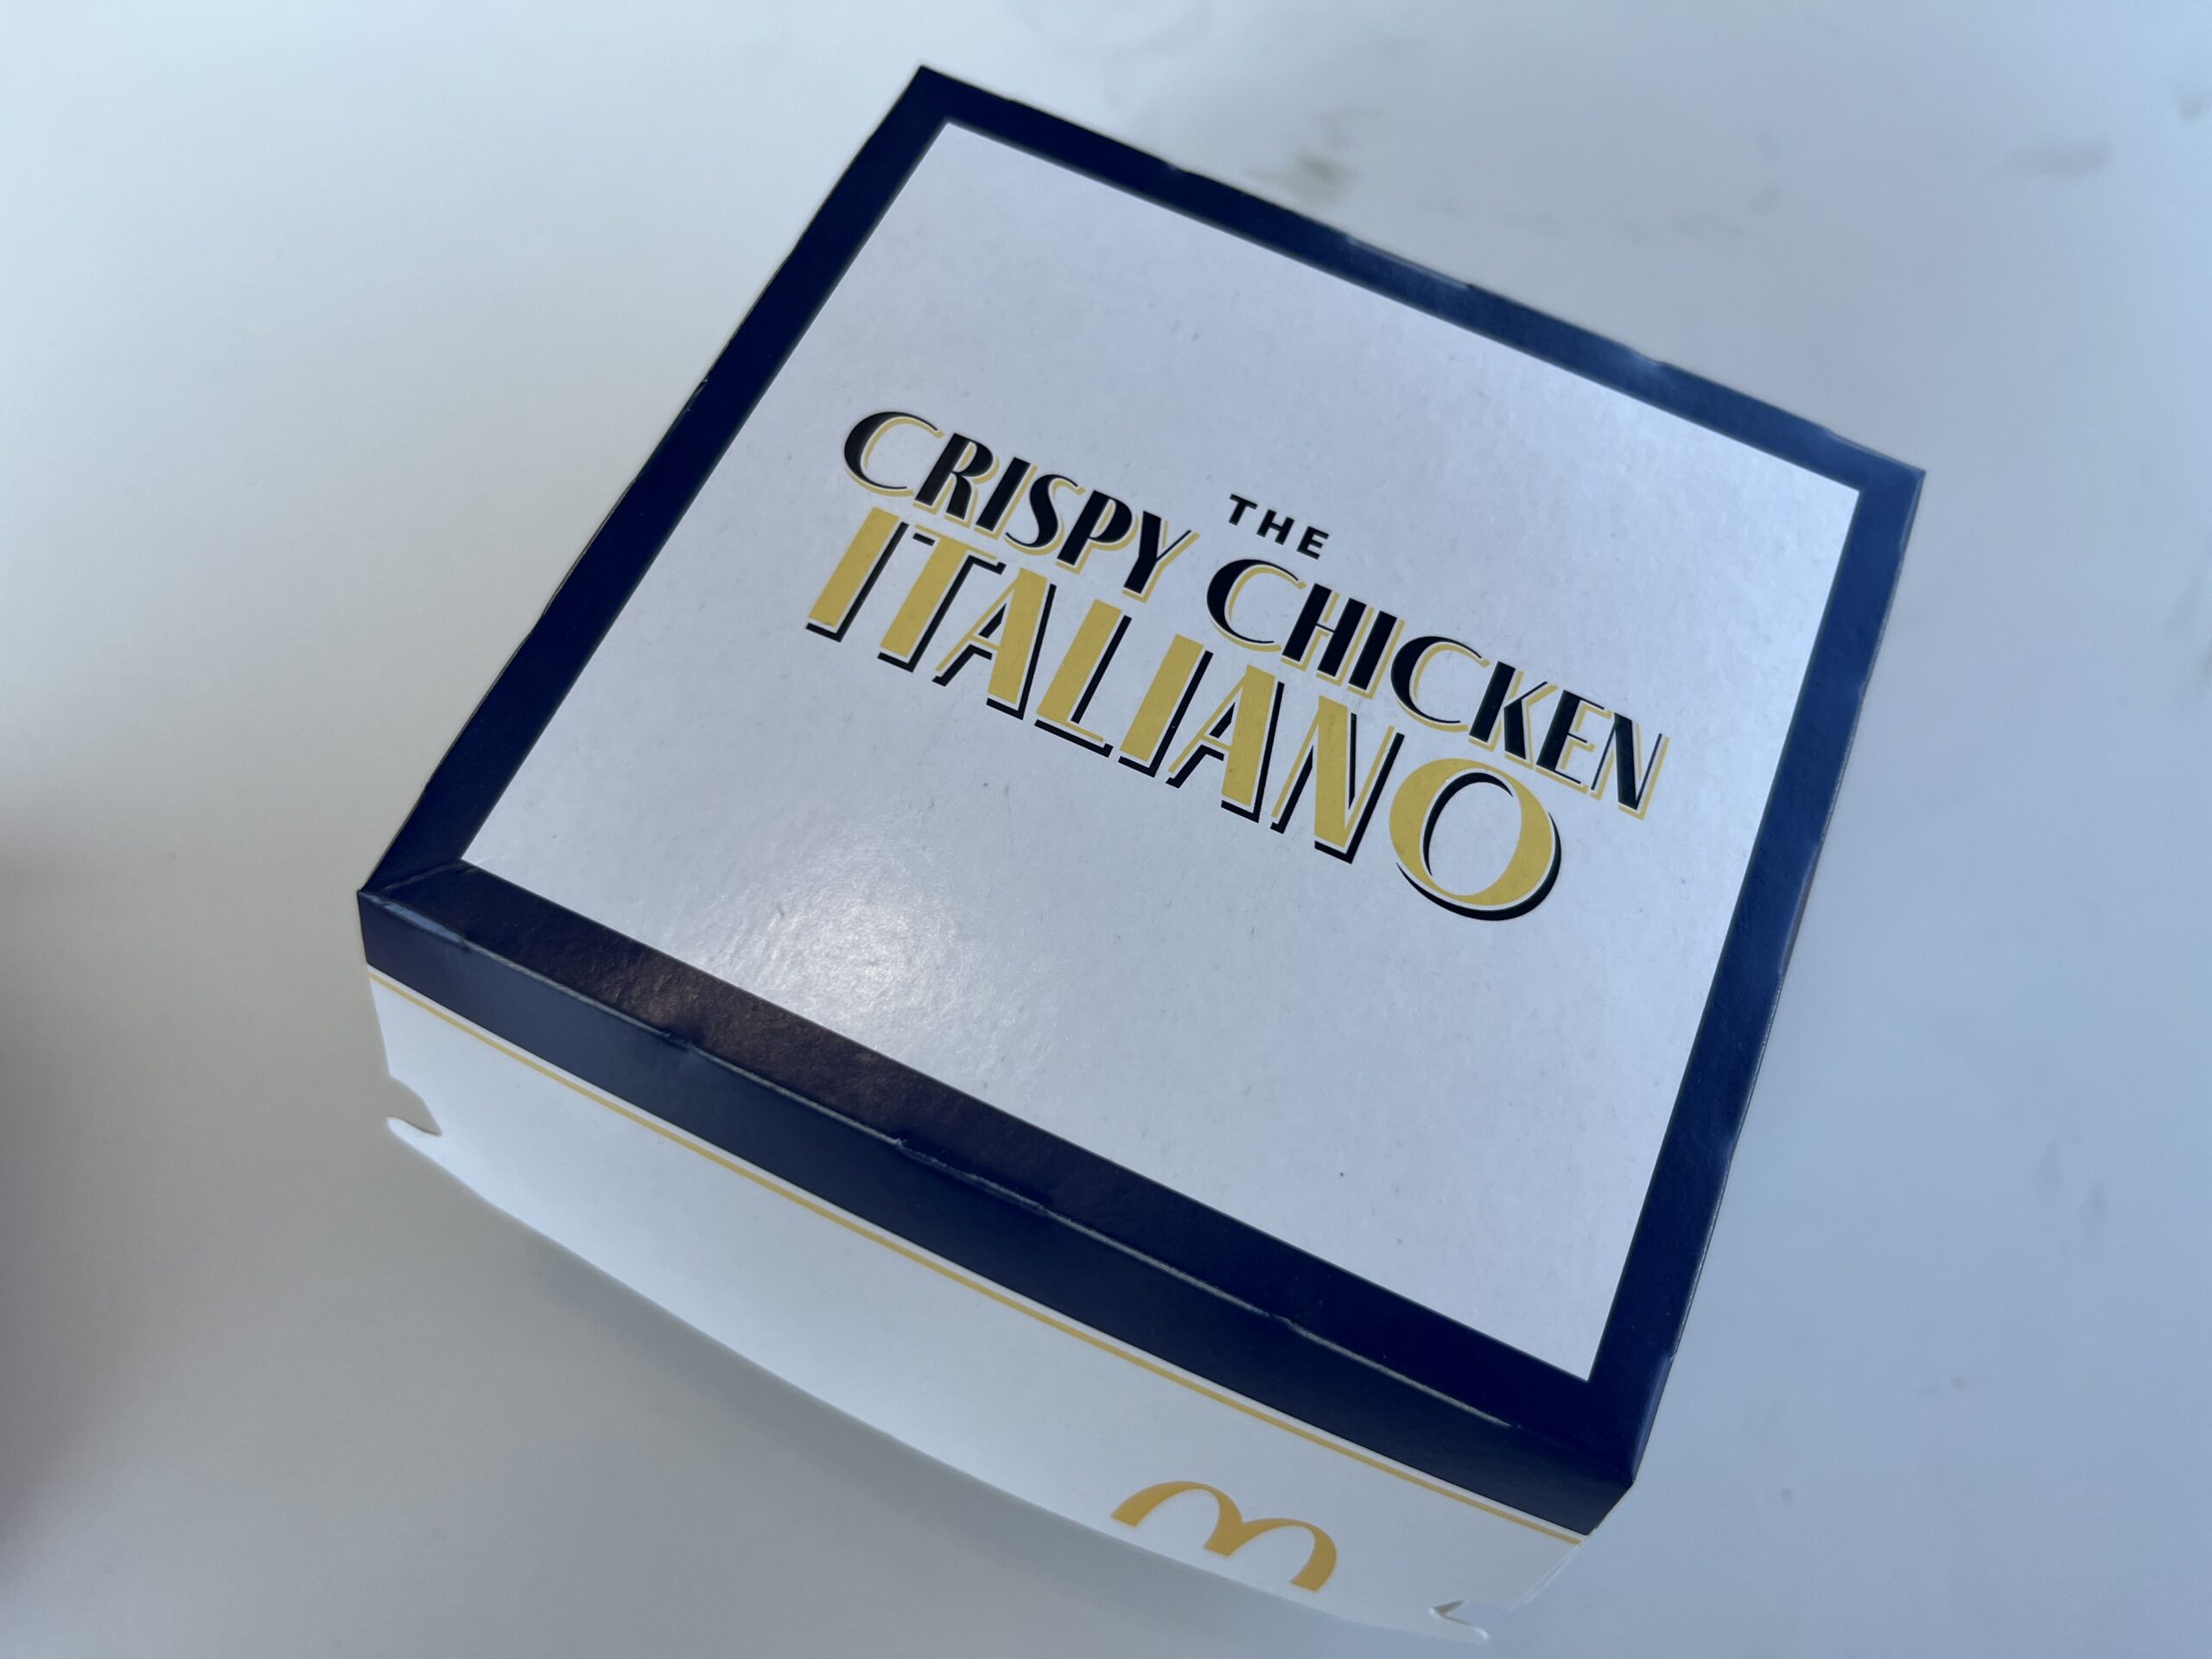 Crispy Chicken Italiano